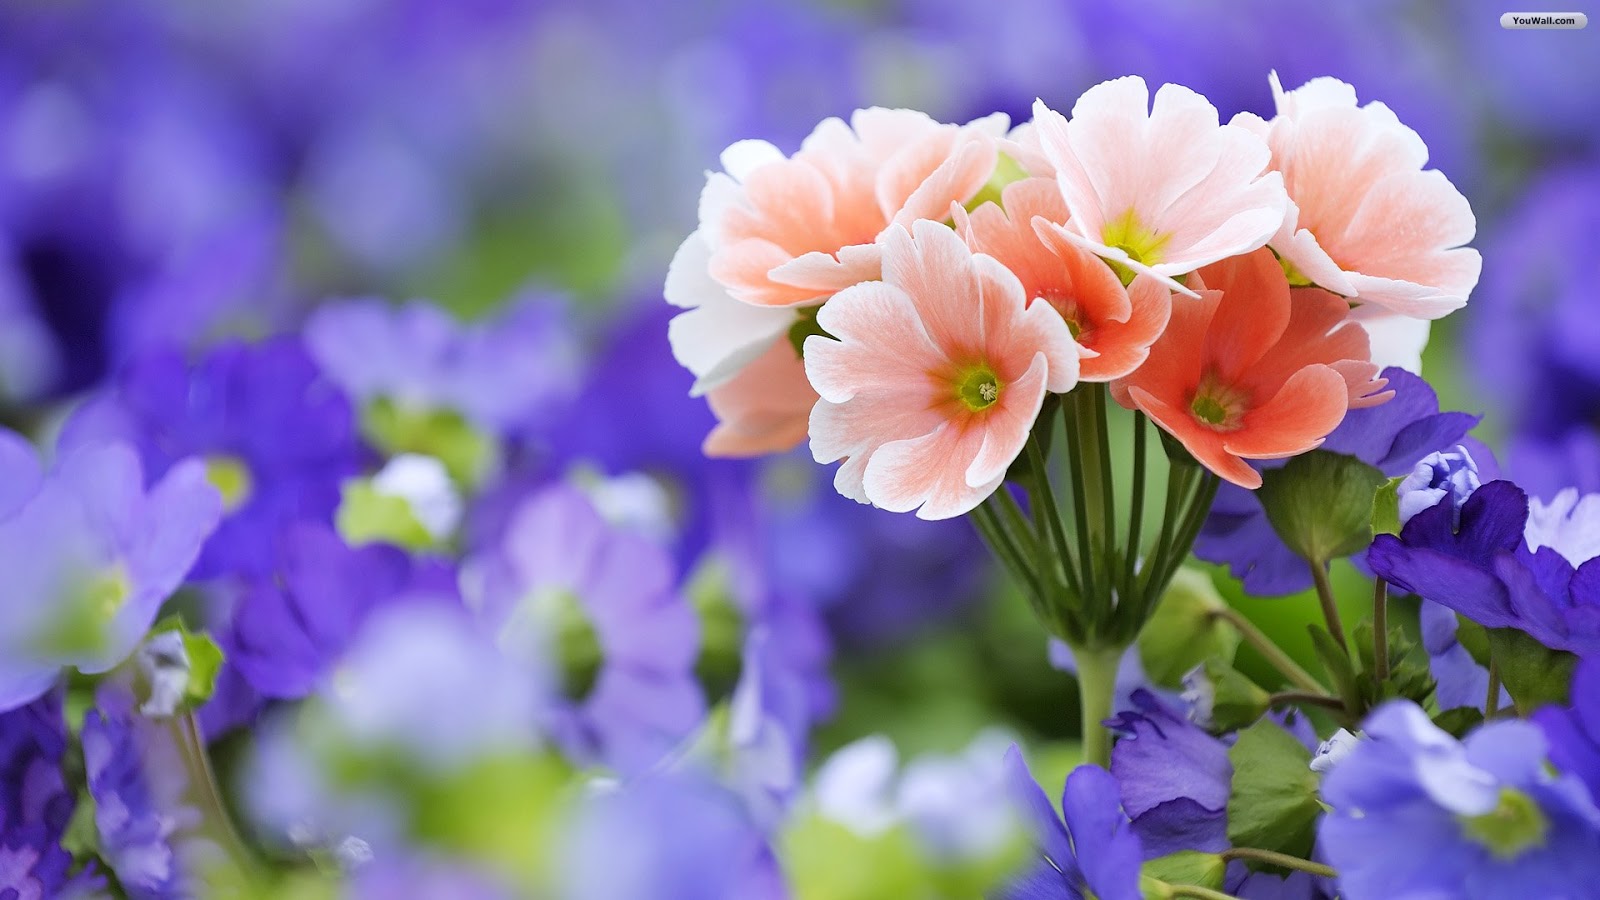 Beautiful Flowers Backgrounds Desktopflowers For Flower Lovers ...